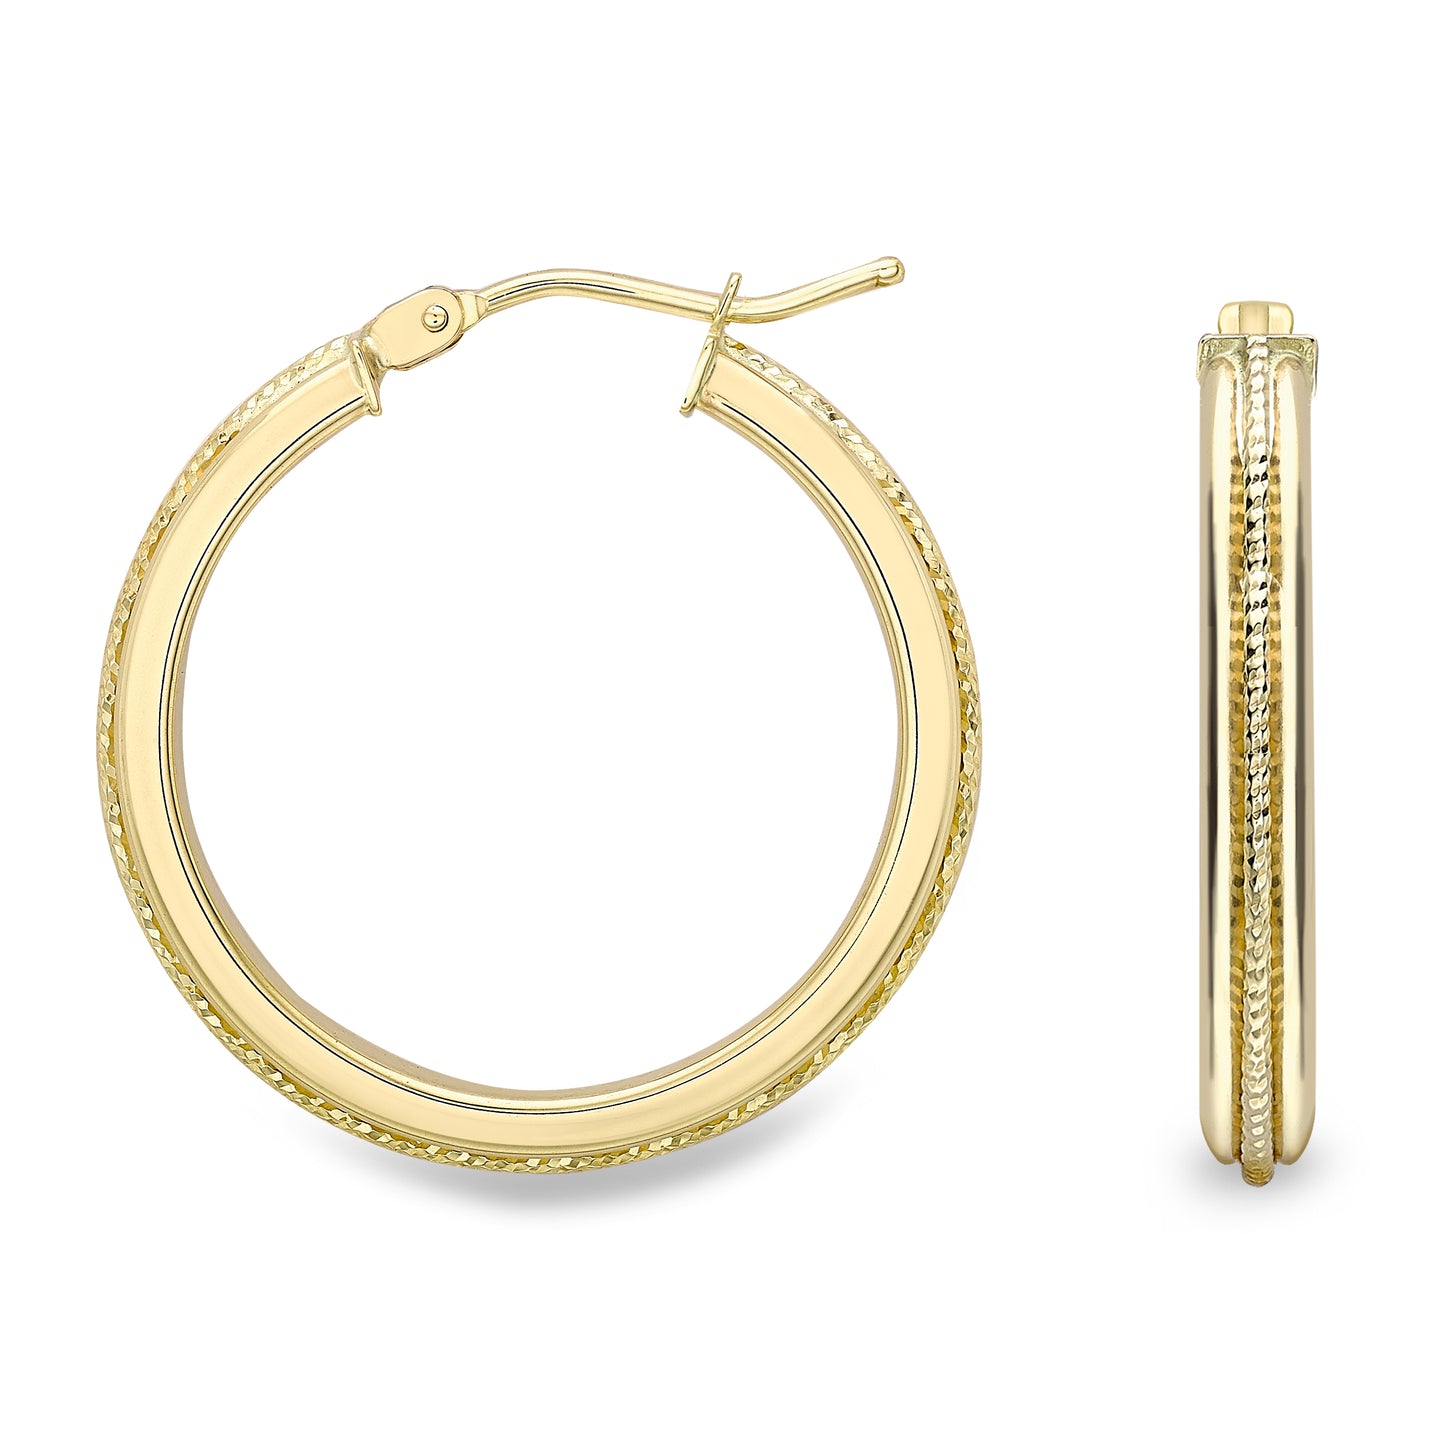 9ct Gold  Bead Rope Raised Edge Hoop Earrings 2mm - ERNR02452